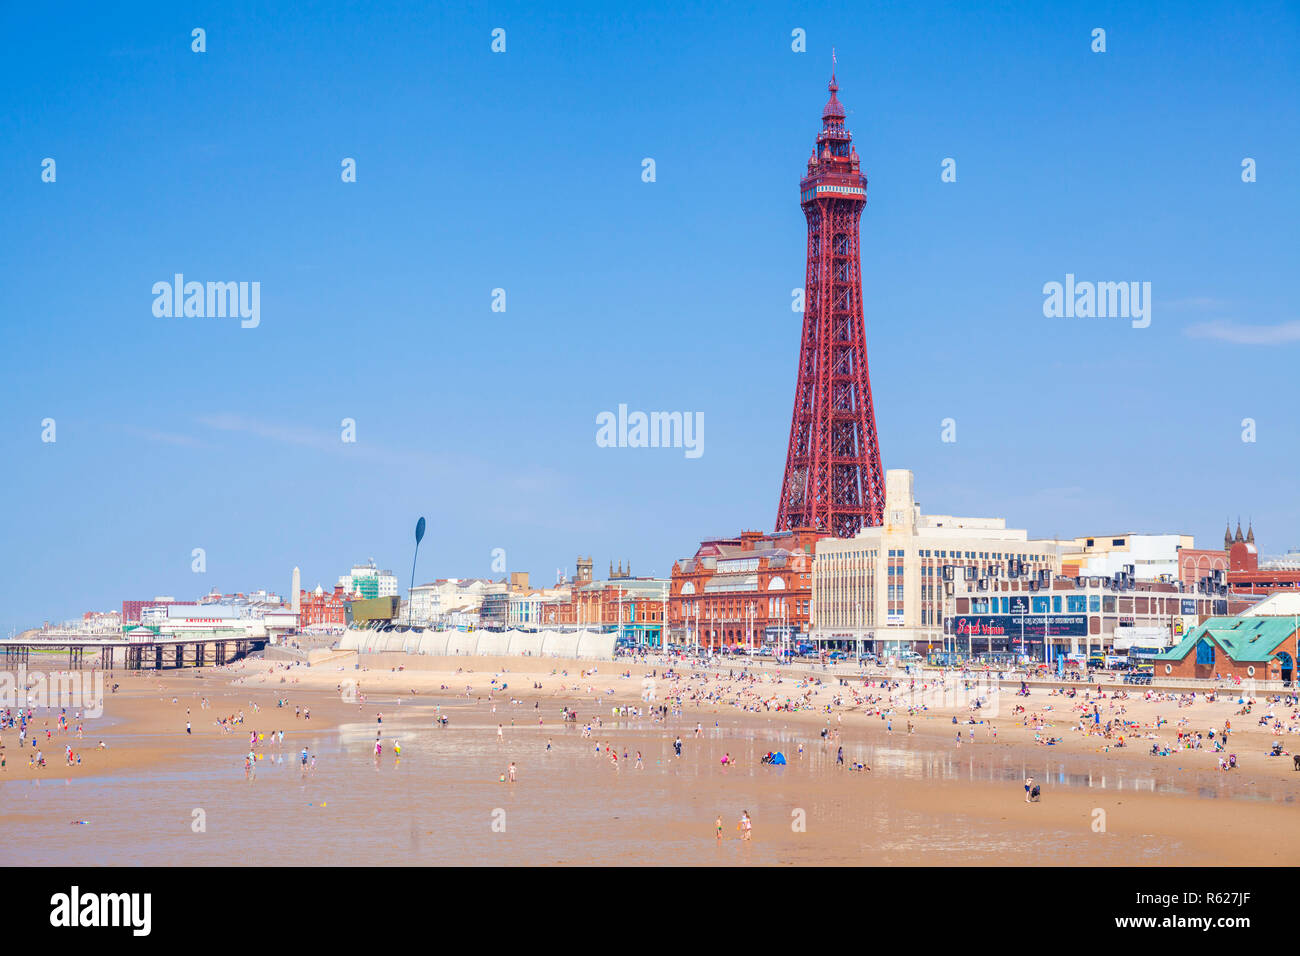 Plage de Blackpool l'été et la tour de Blackpool Blackpool Royaume-Uni personnes sur la plage de sable du Blackpool Lancashire England UK GO Europe Banque D'Images